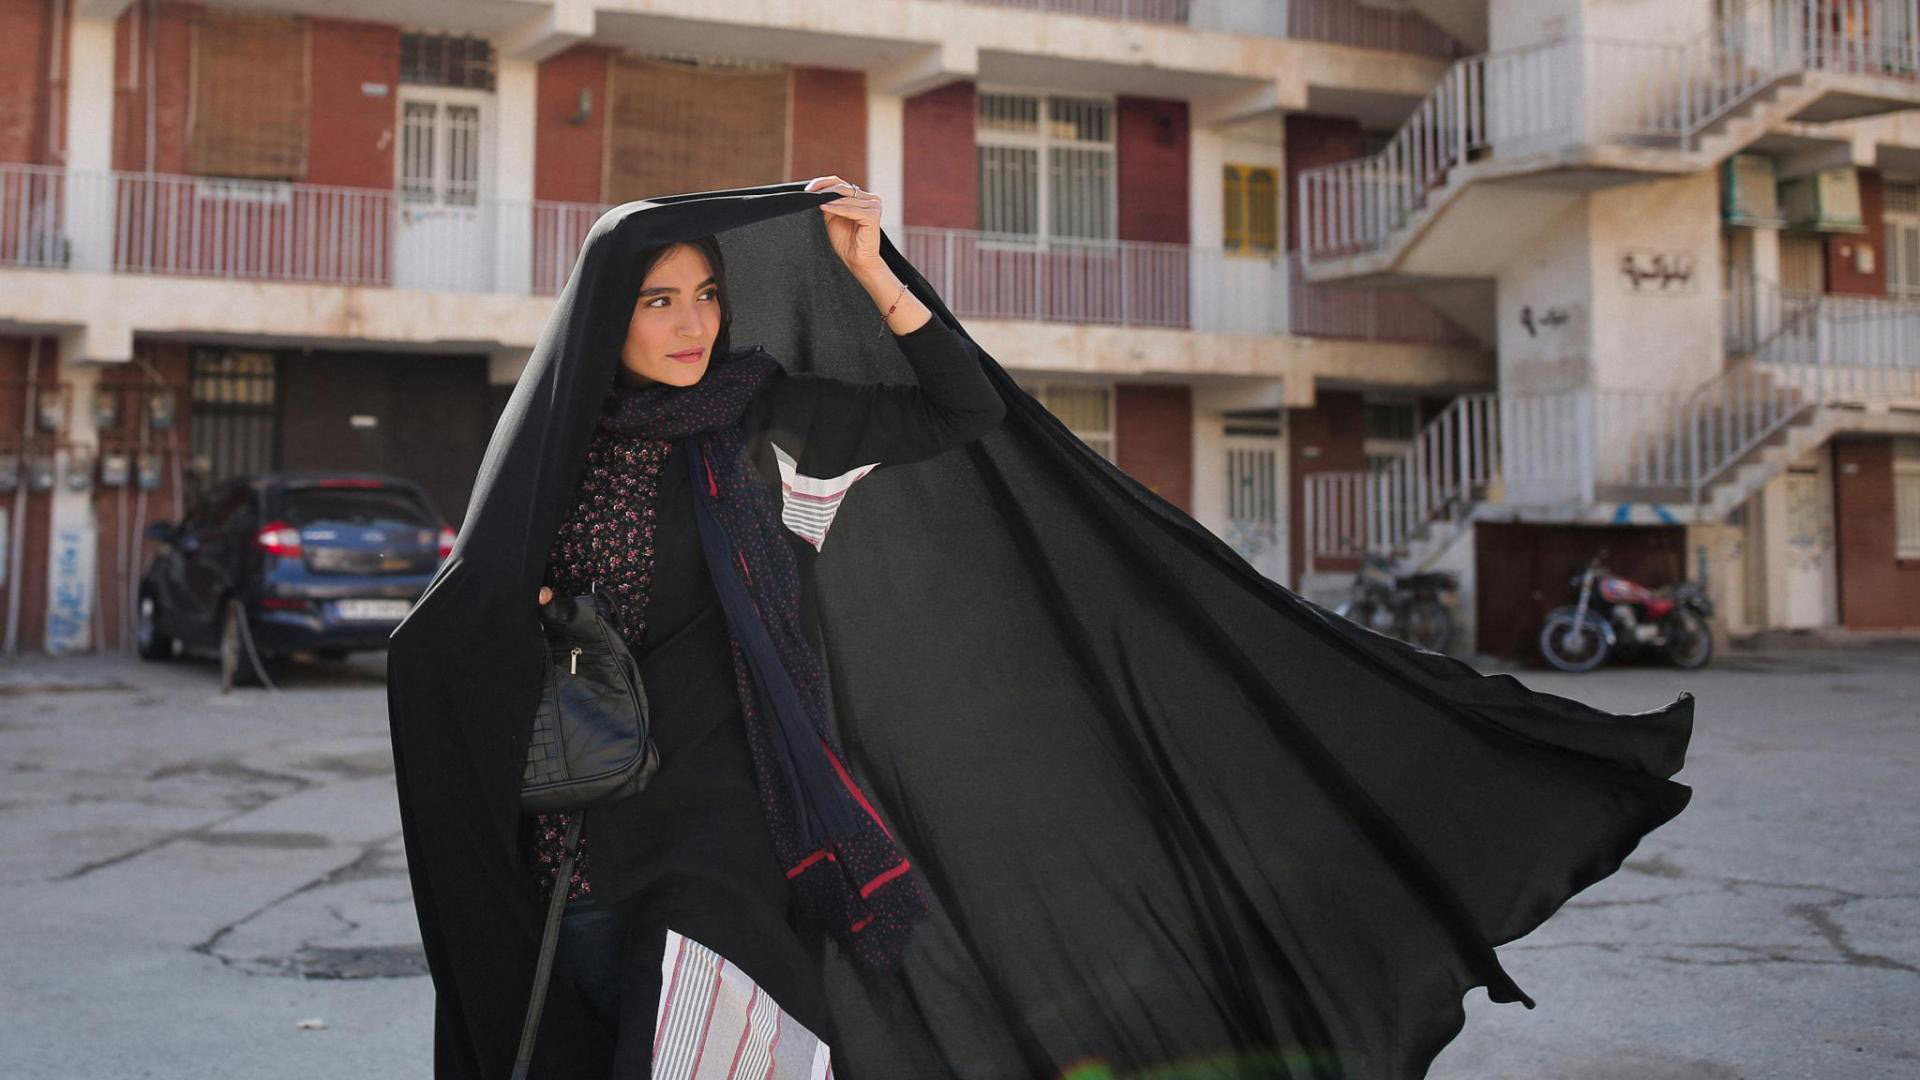 Cena do filme Um Herói. Mostra uma mulher iraniana usando vestimentas pretas e cobrindo sua cabeça com um tecido da mesma cor. Ao fundo, vemos casas de tijolo vermelho. 